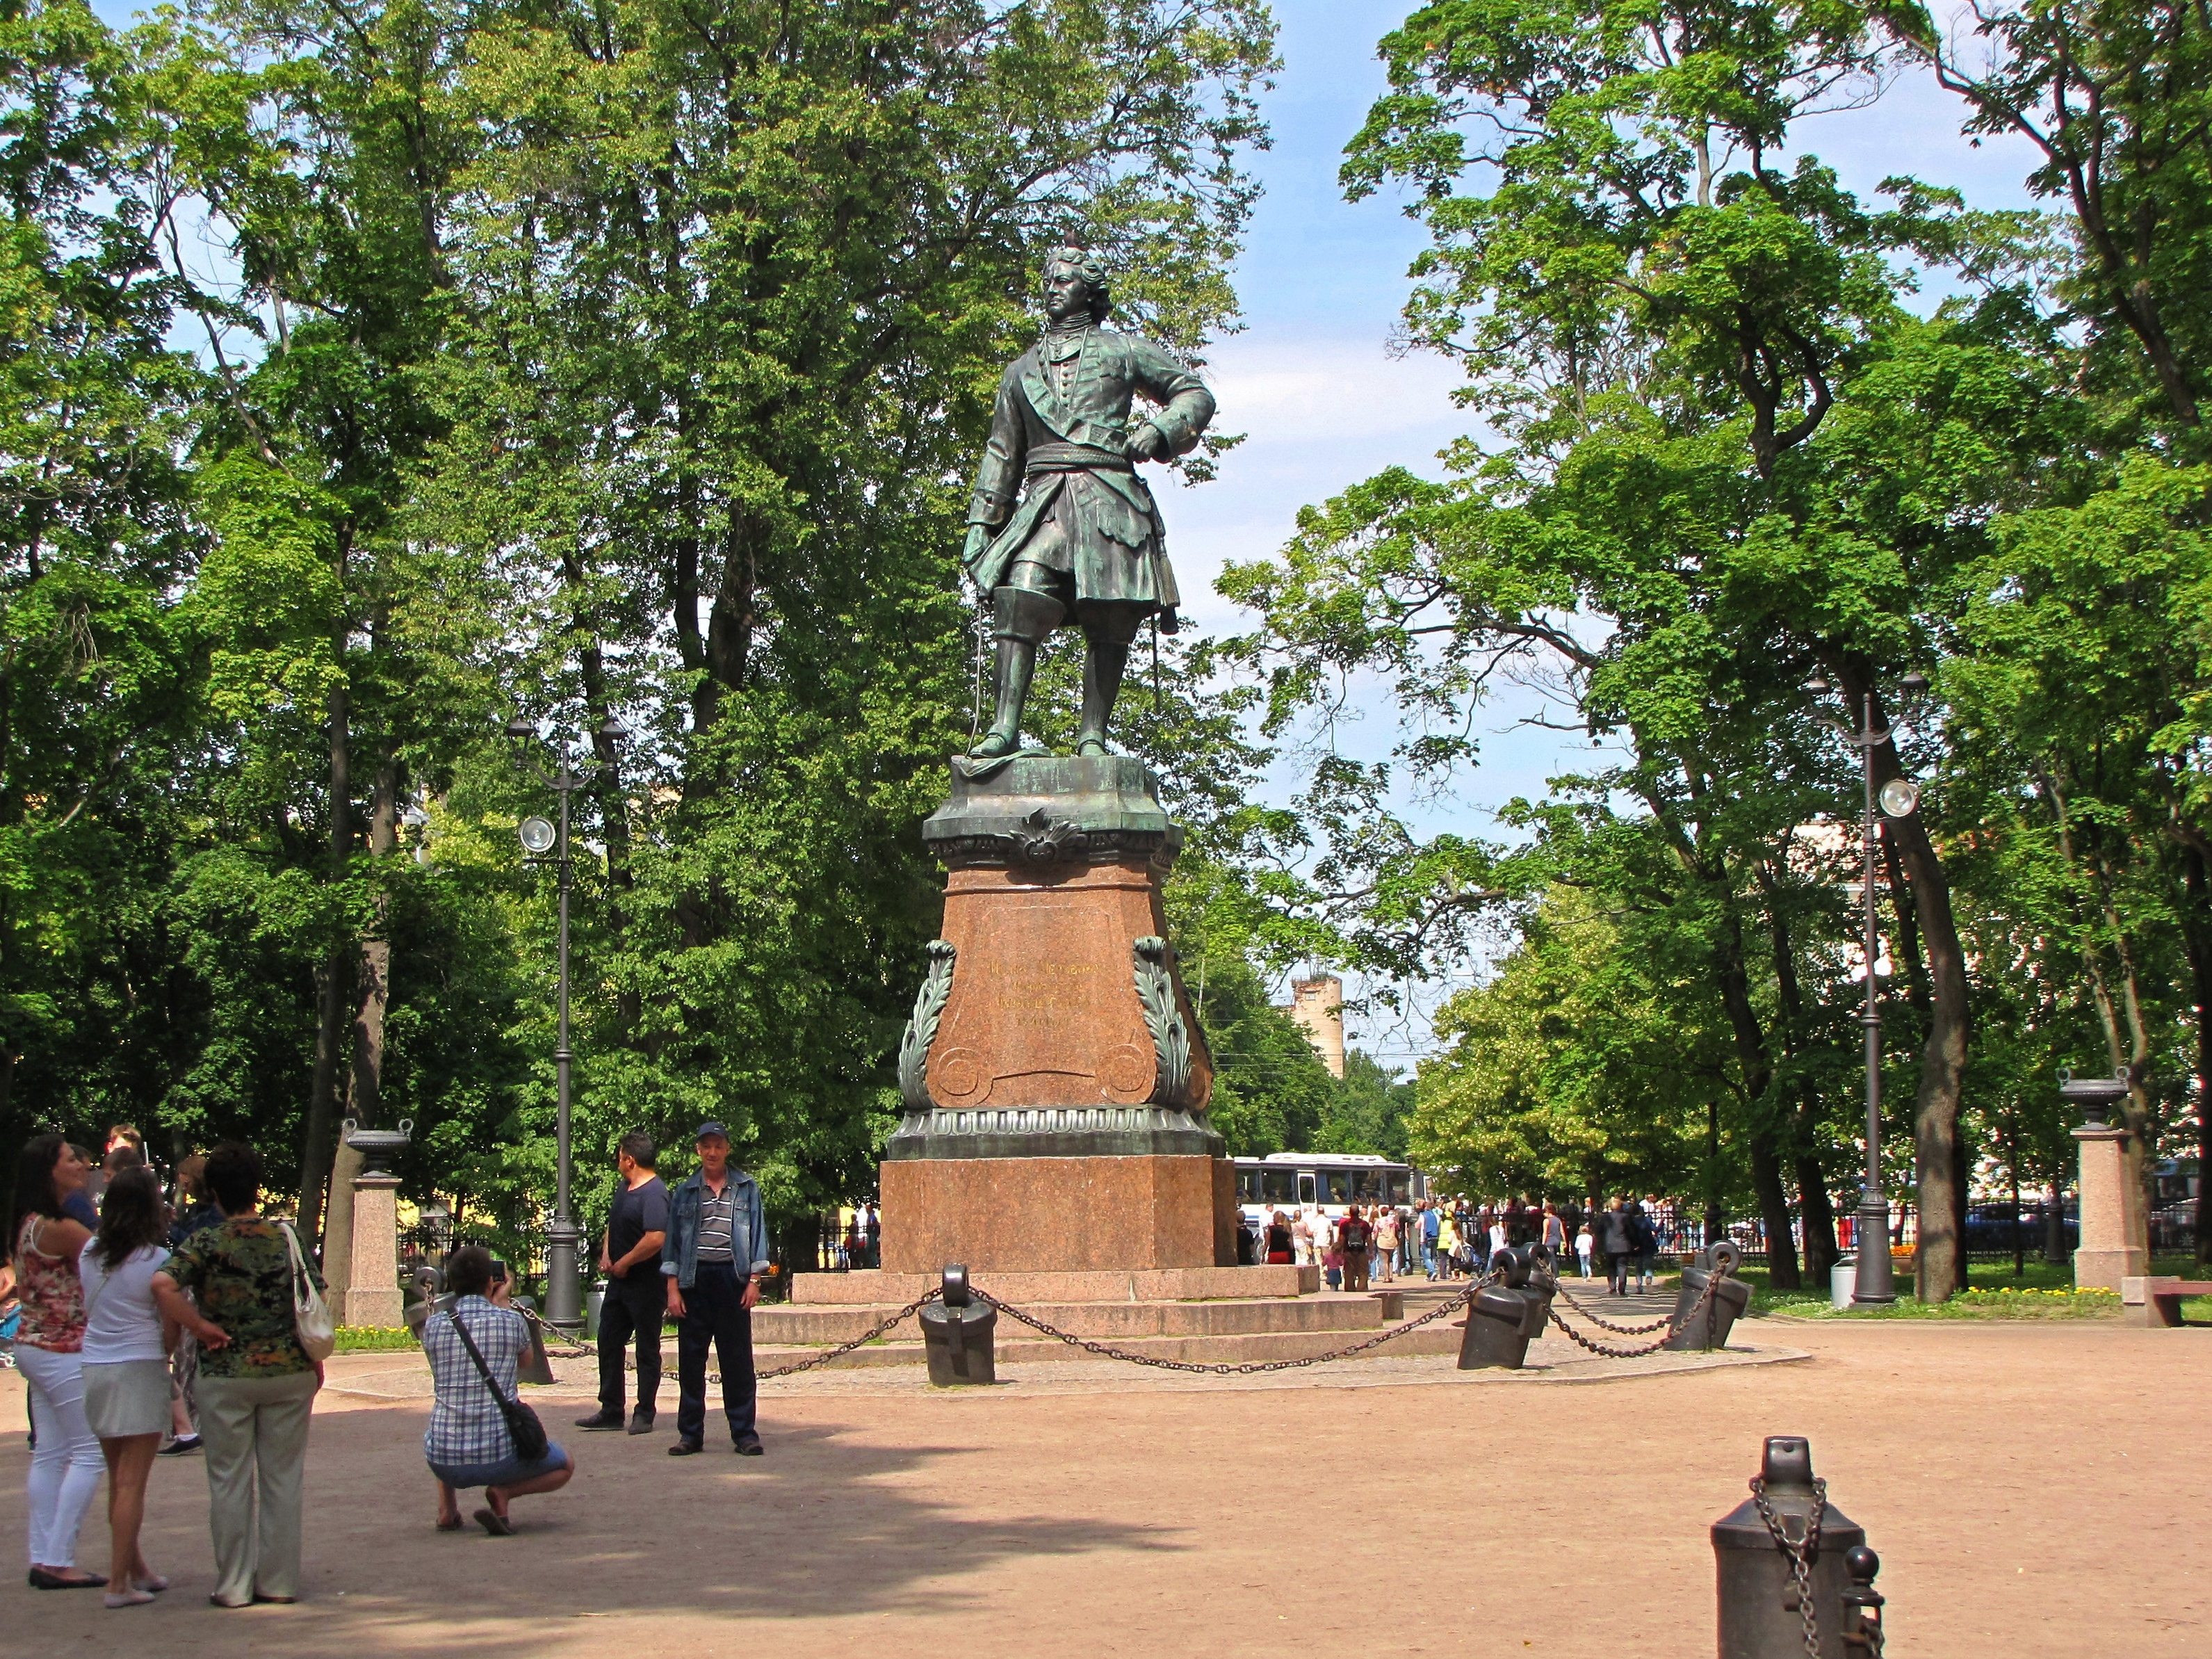 Памятник петру в кронштадте фото